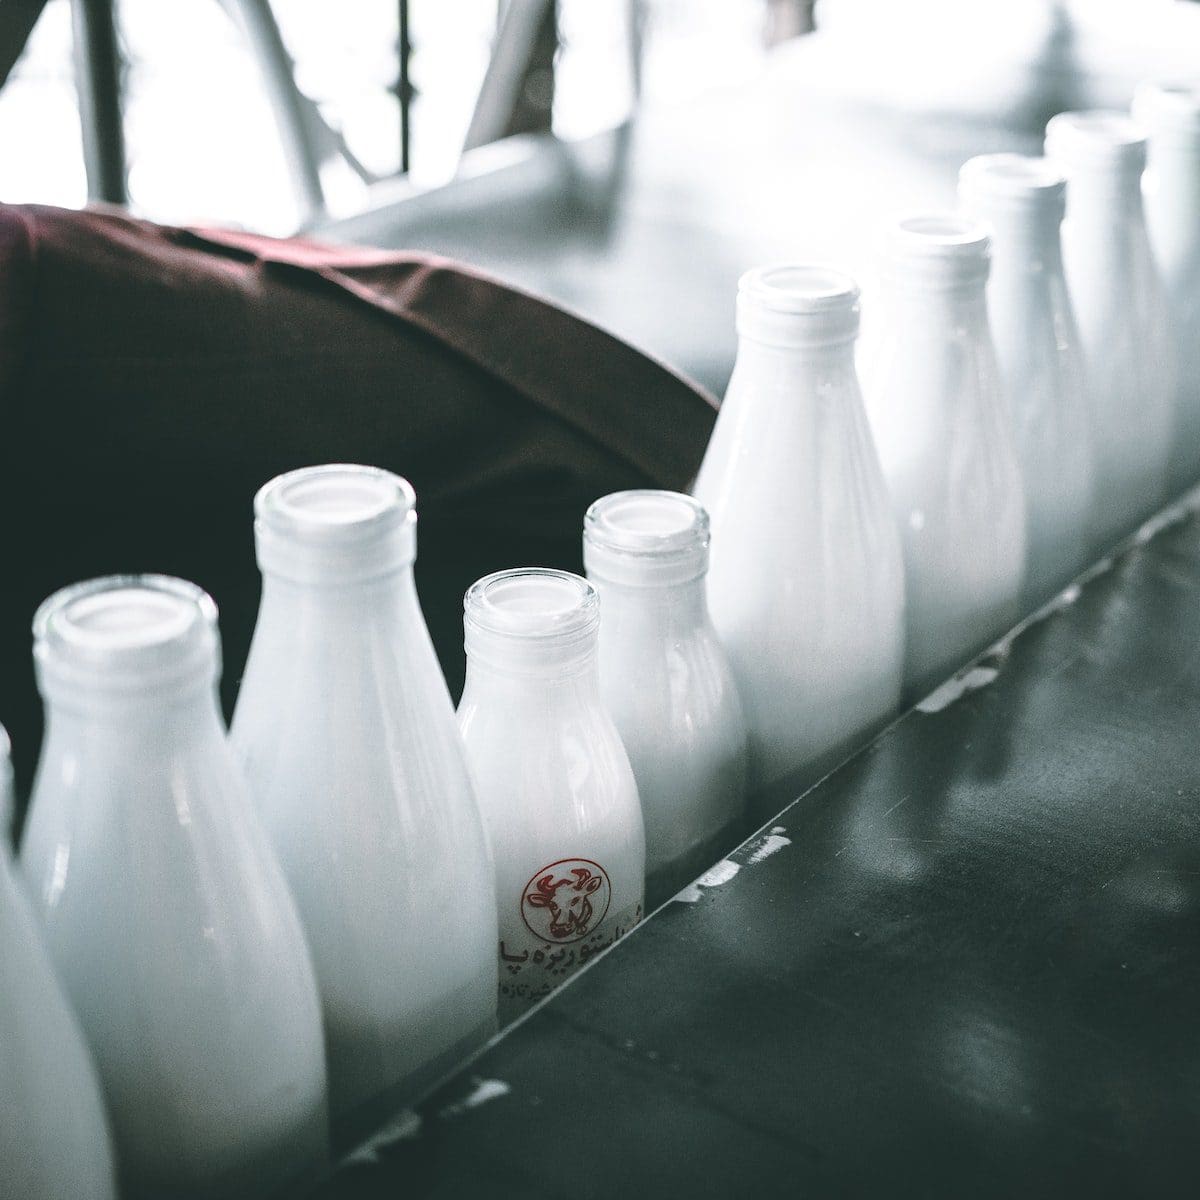 пастеризованное молоко